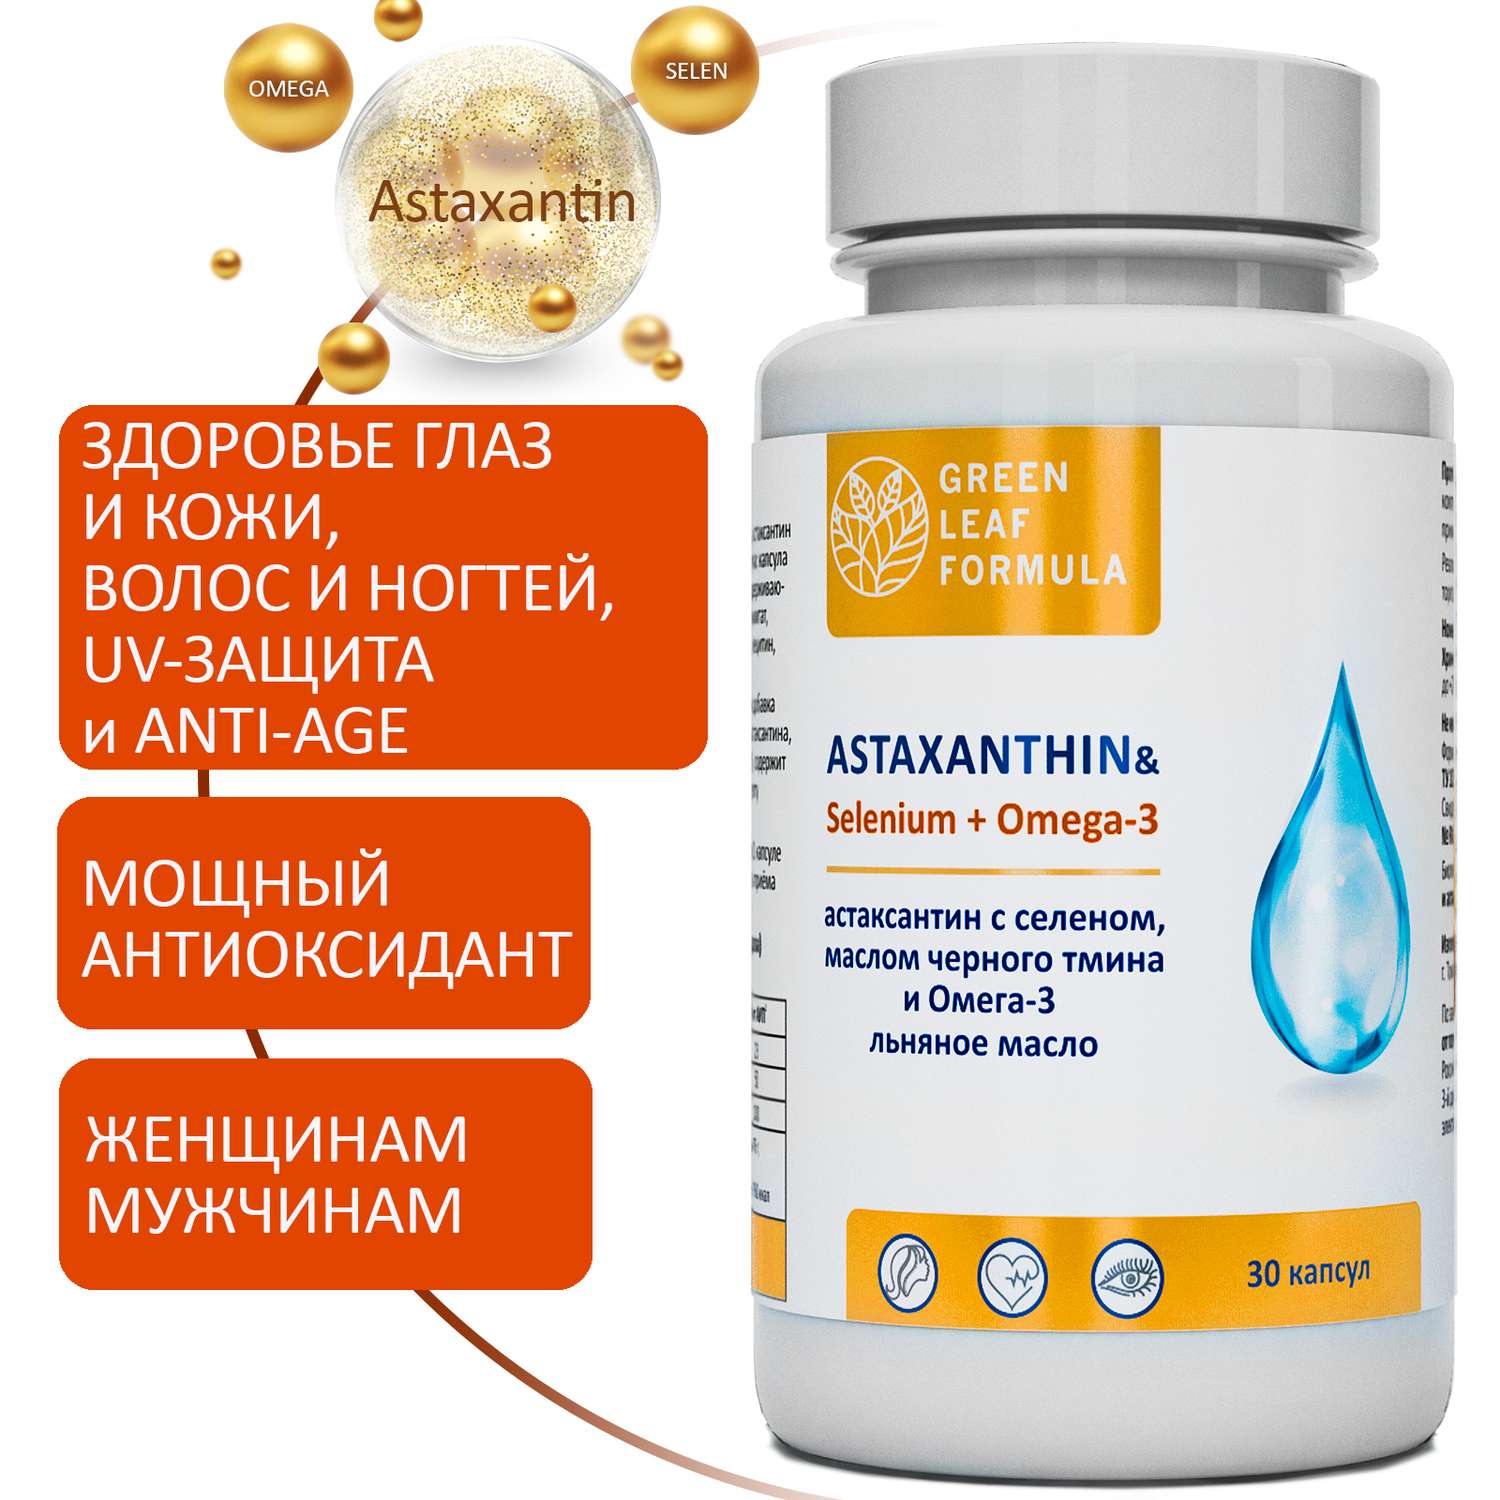 Астаксантин антиоксиданты Green Leaf Formula селен витамины для кожи волос и ногтей для глаз для сердца омега 3-6-9 3 банки - фото 2